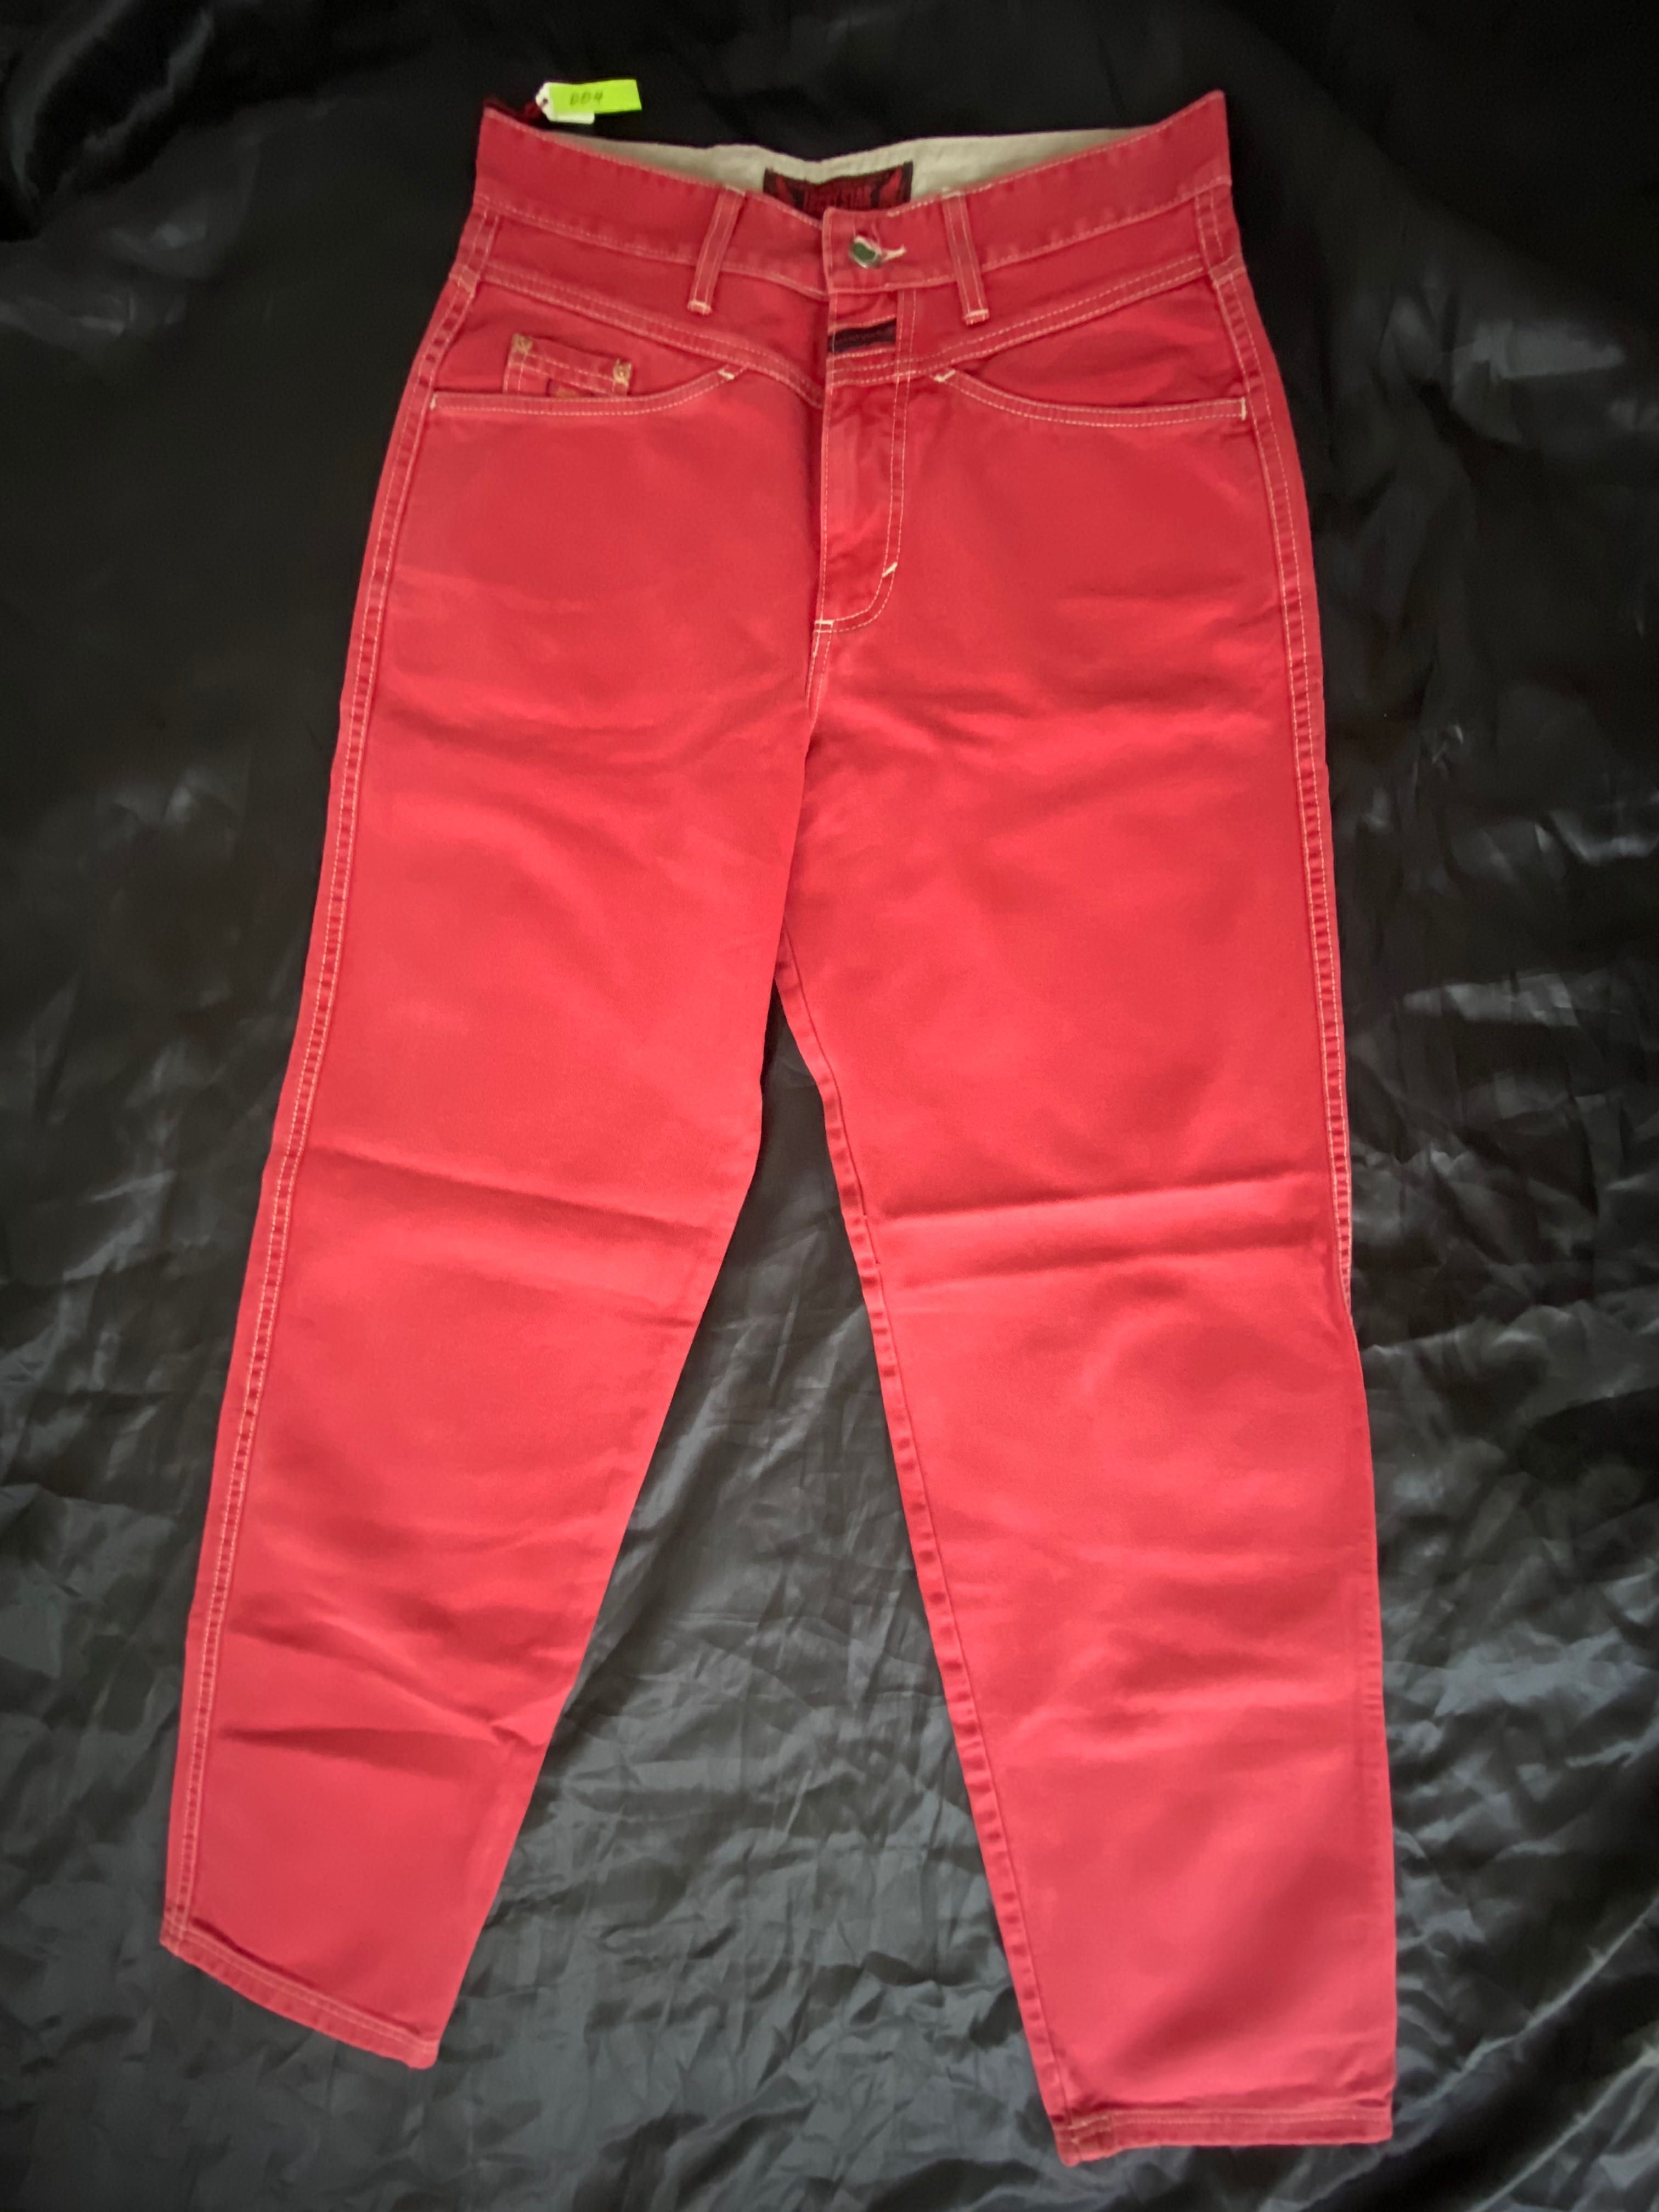 Spodnie jeansowe Lucky Star nowe